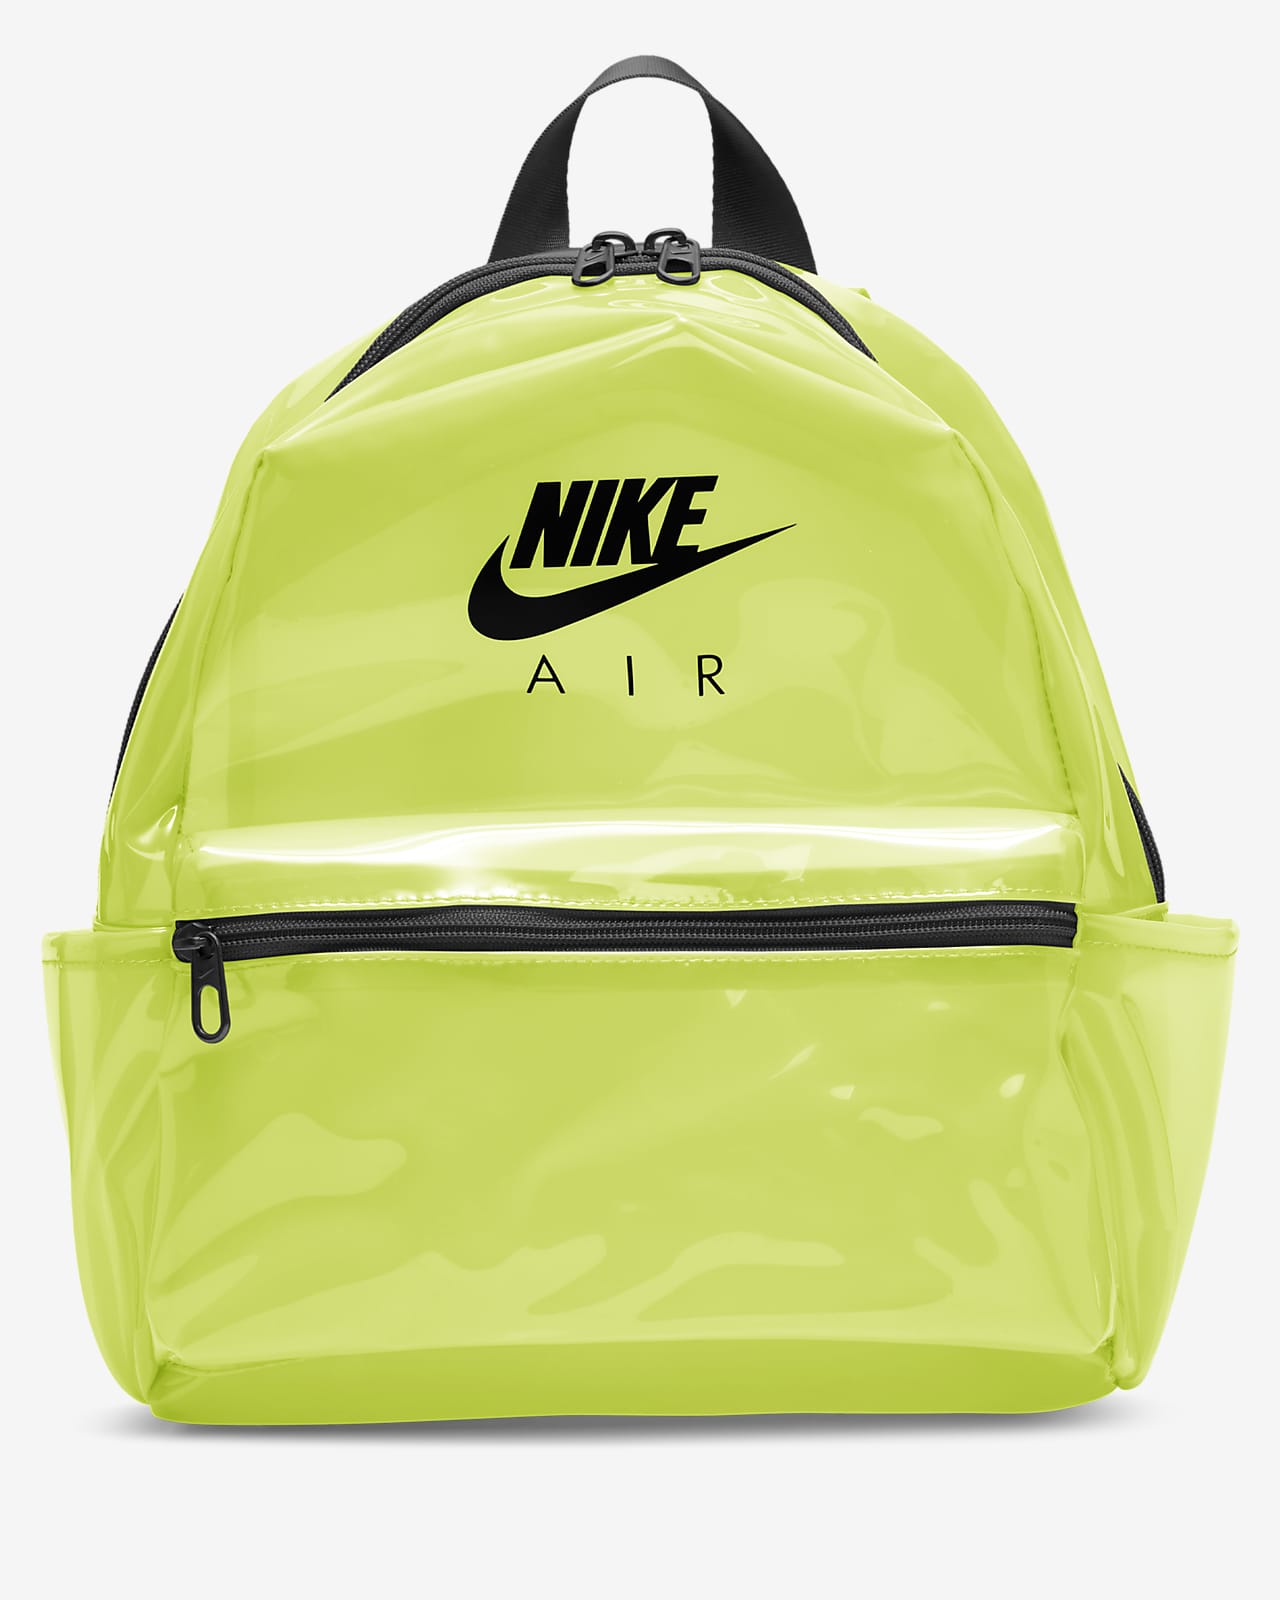 nike just do it bag mini backpack